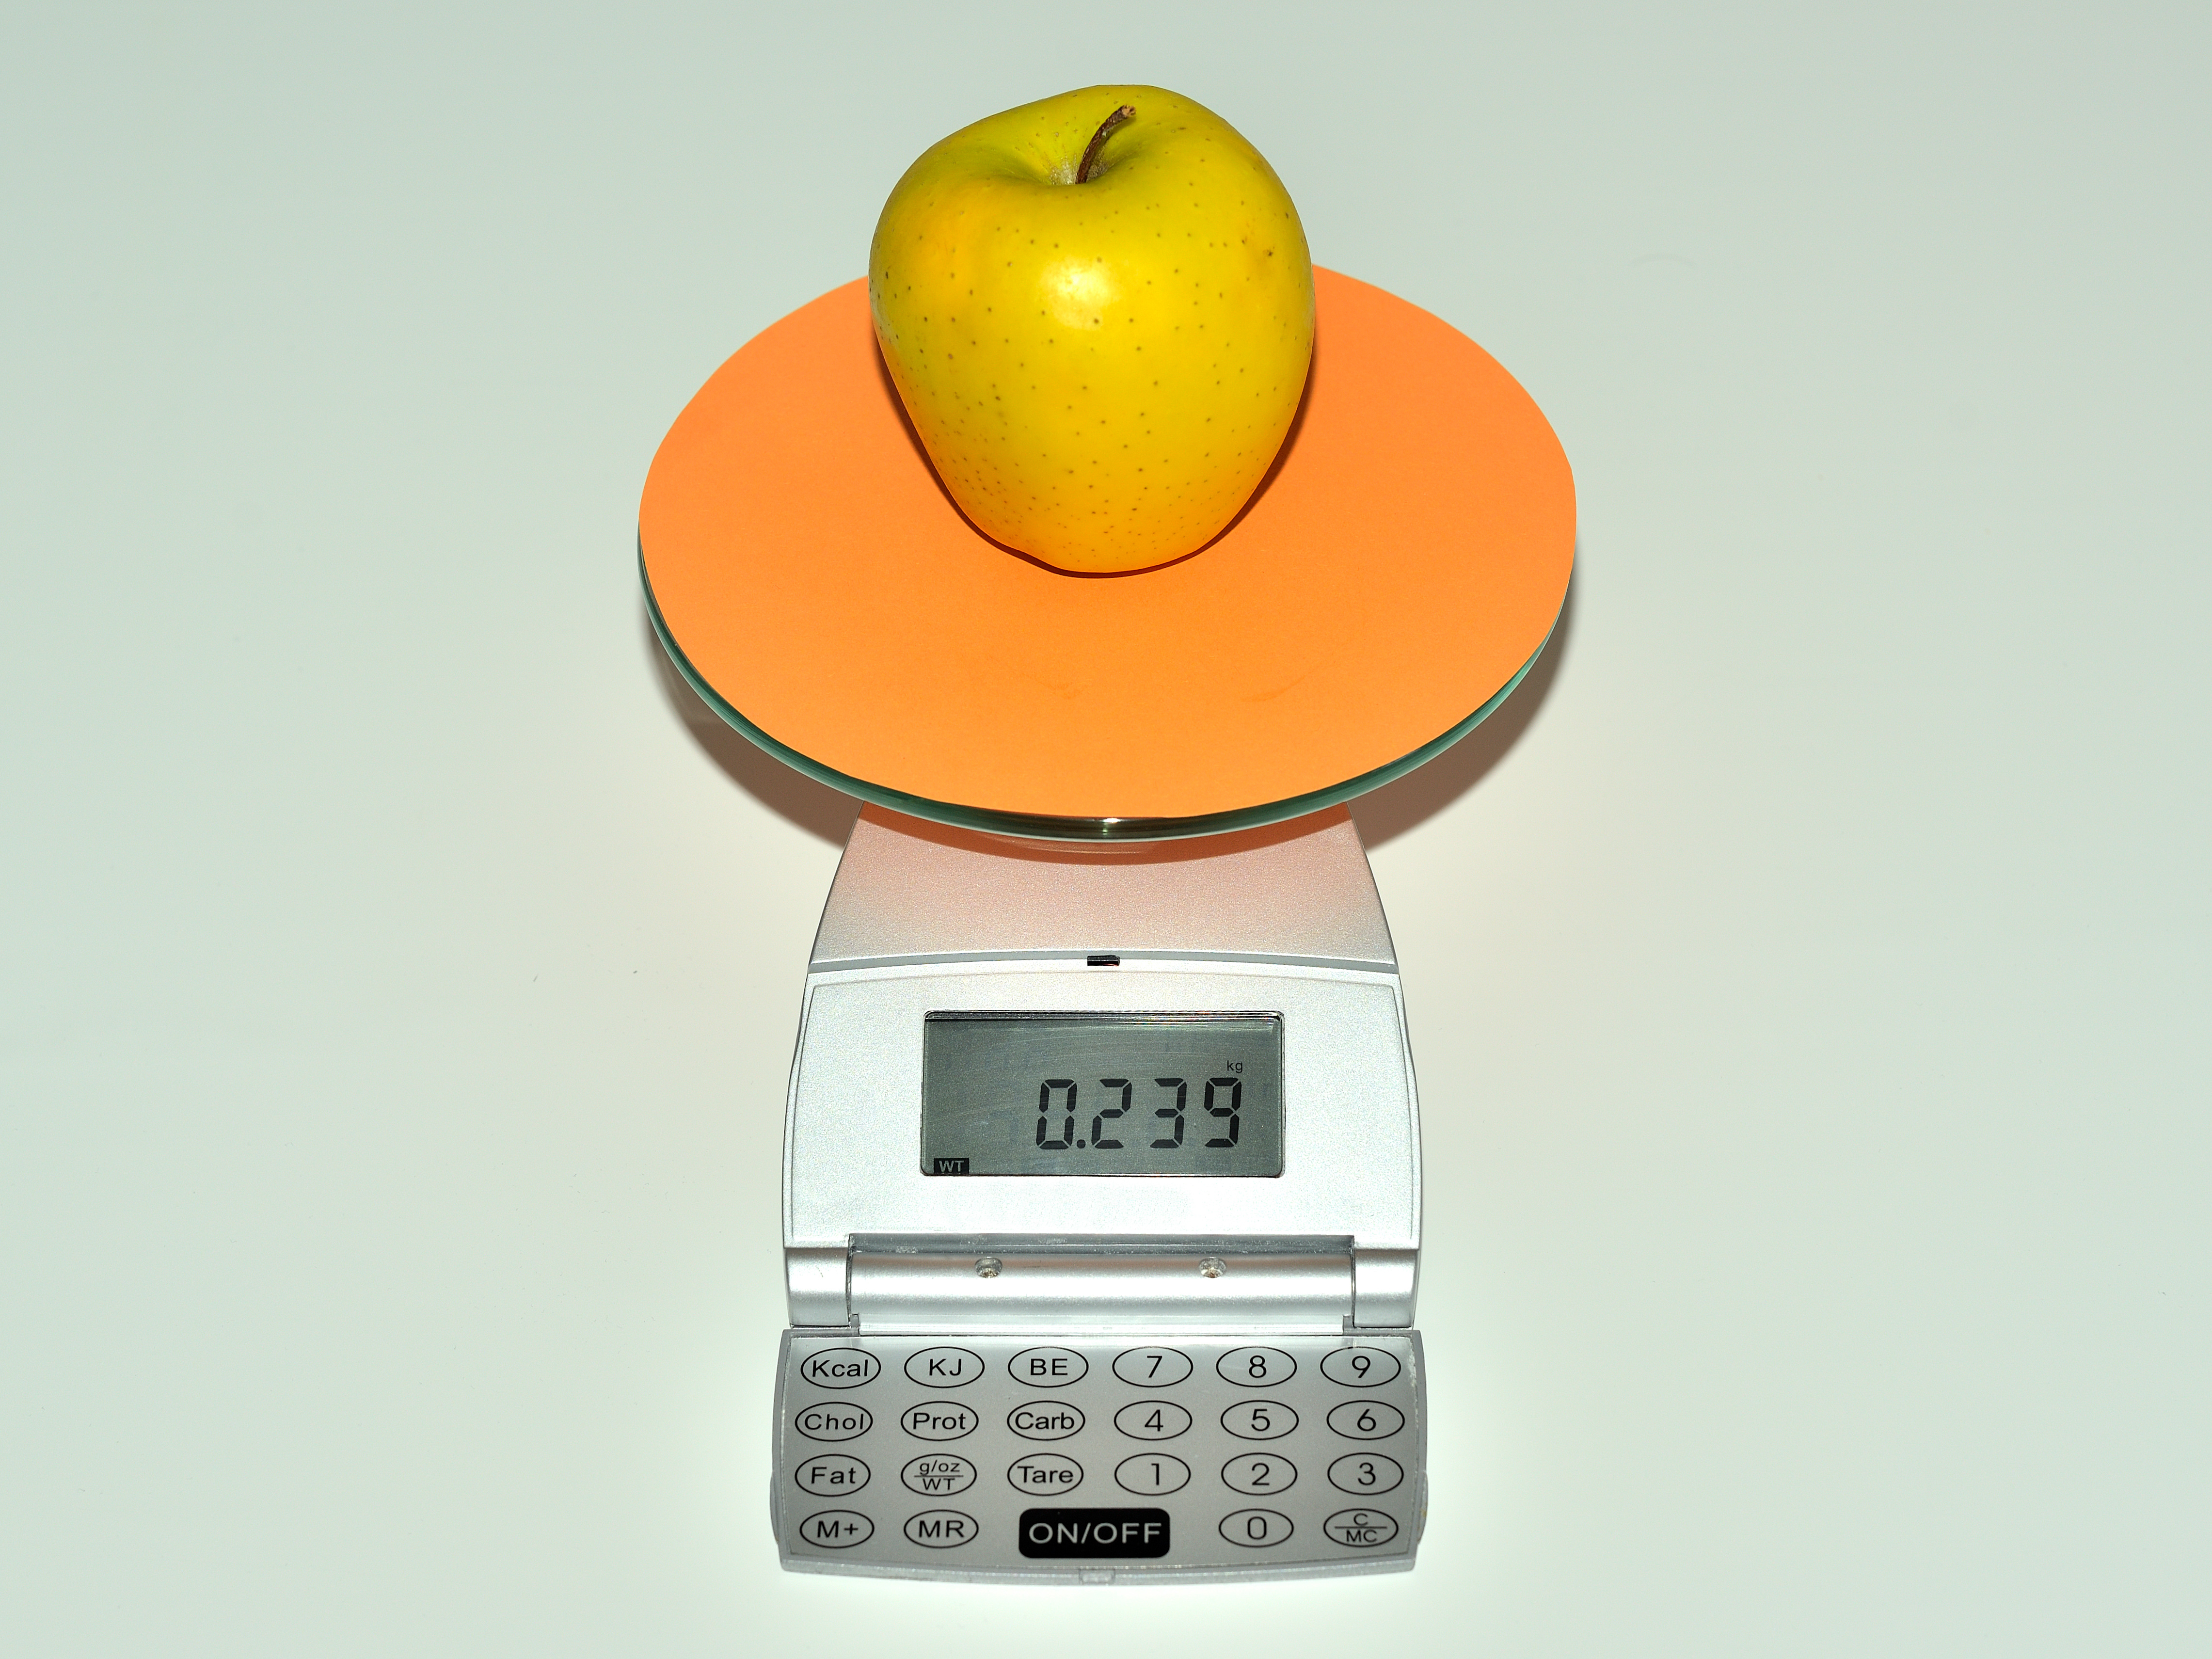 La imagen muestra una báscula, sobre la cual hay una manzana amarilla que pesa 239 gramos